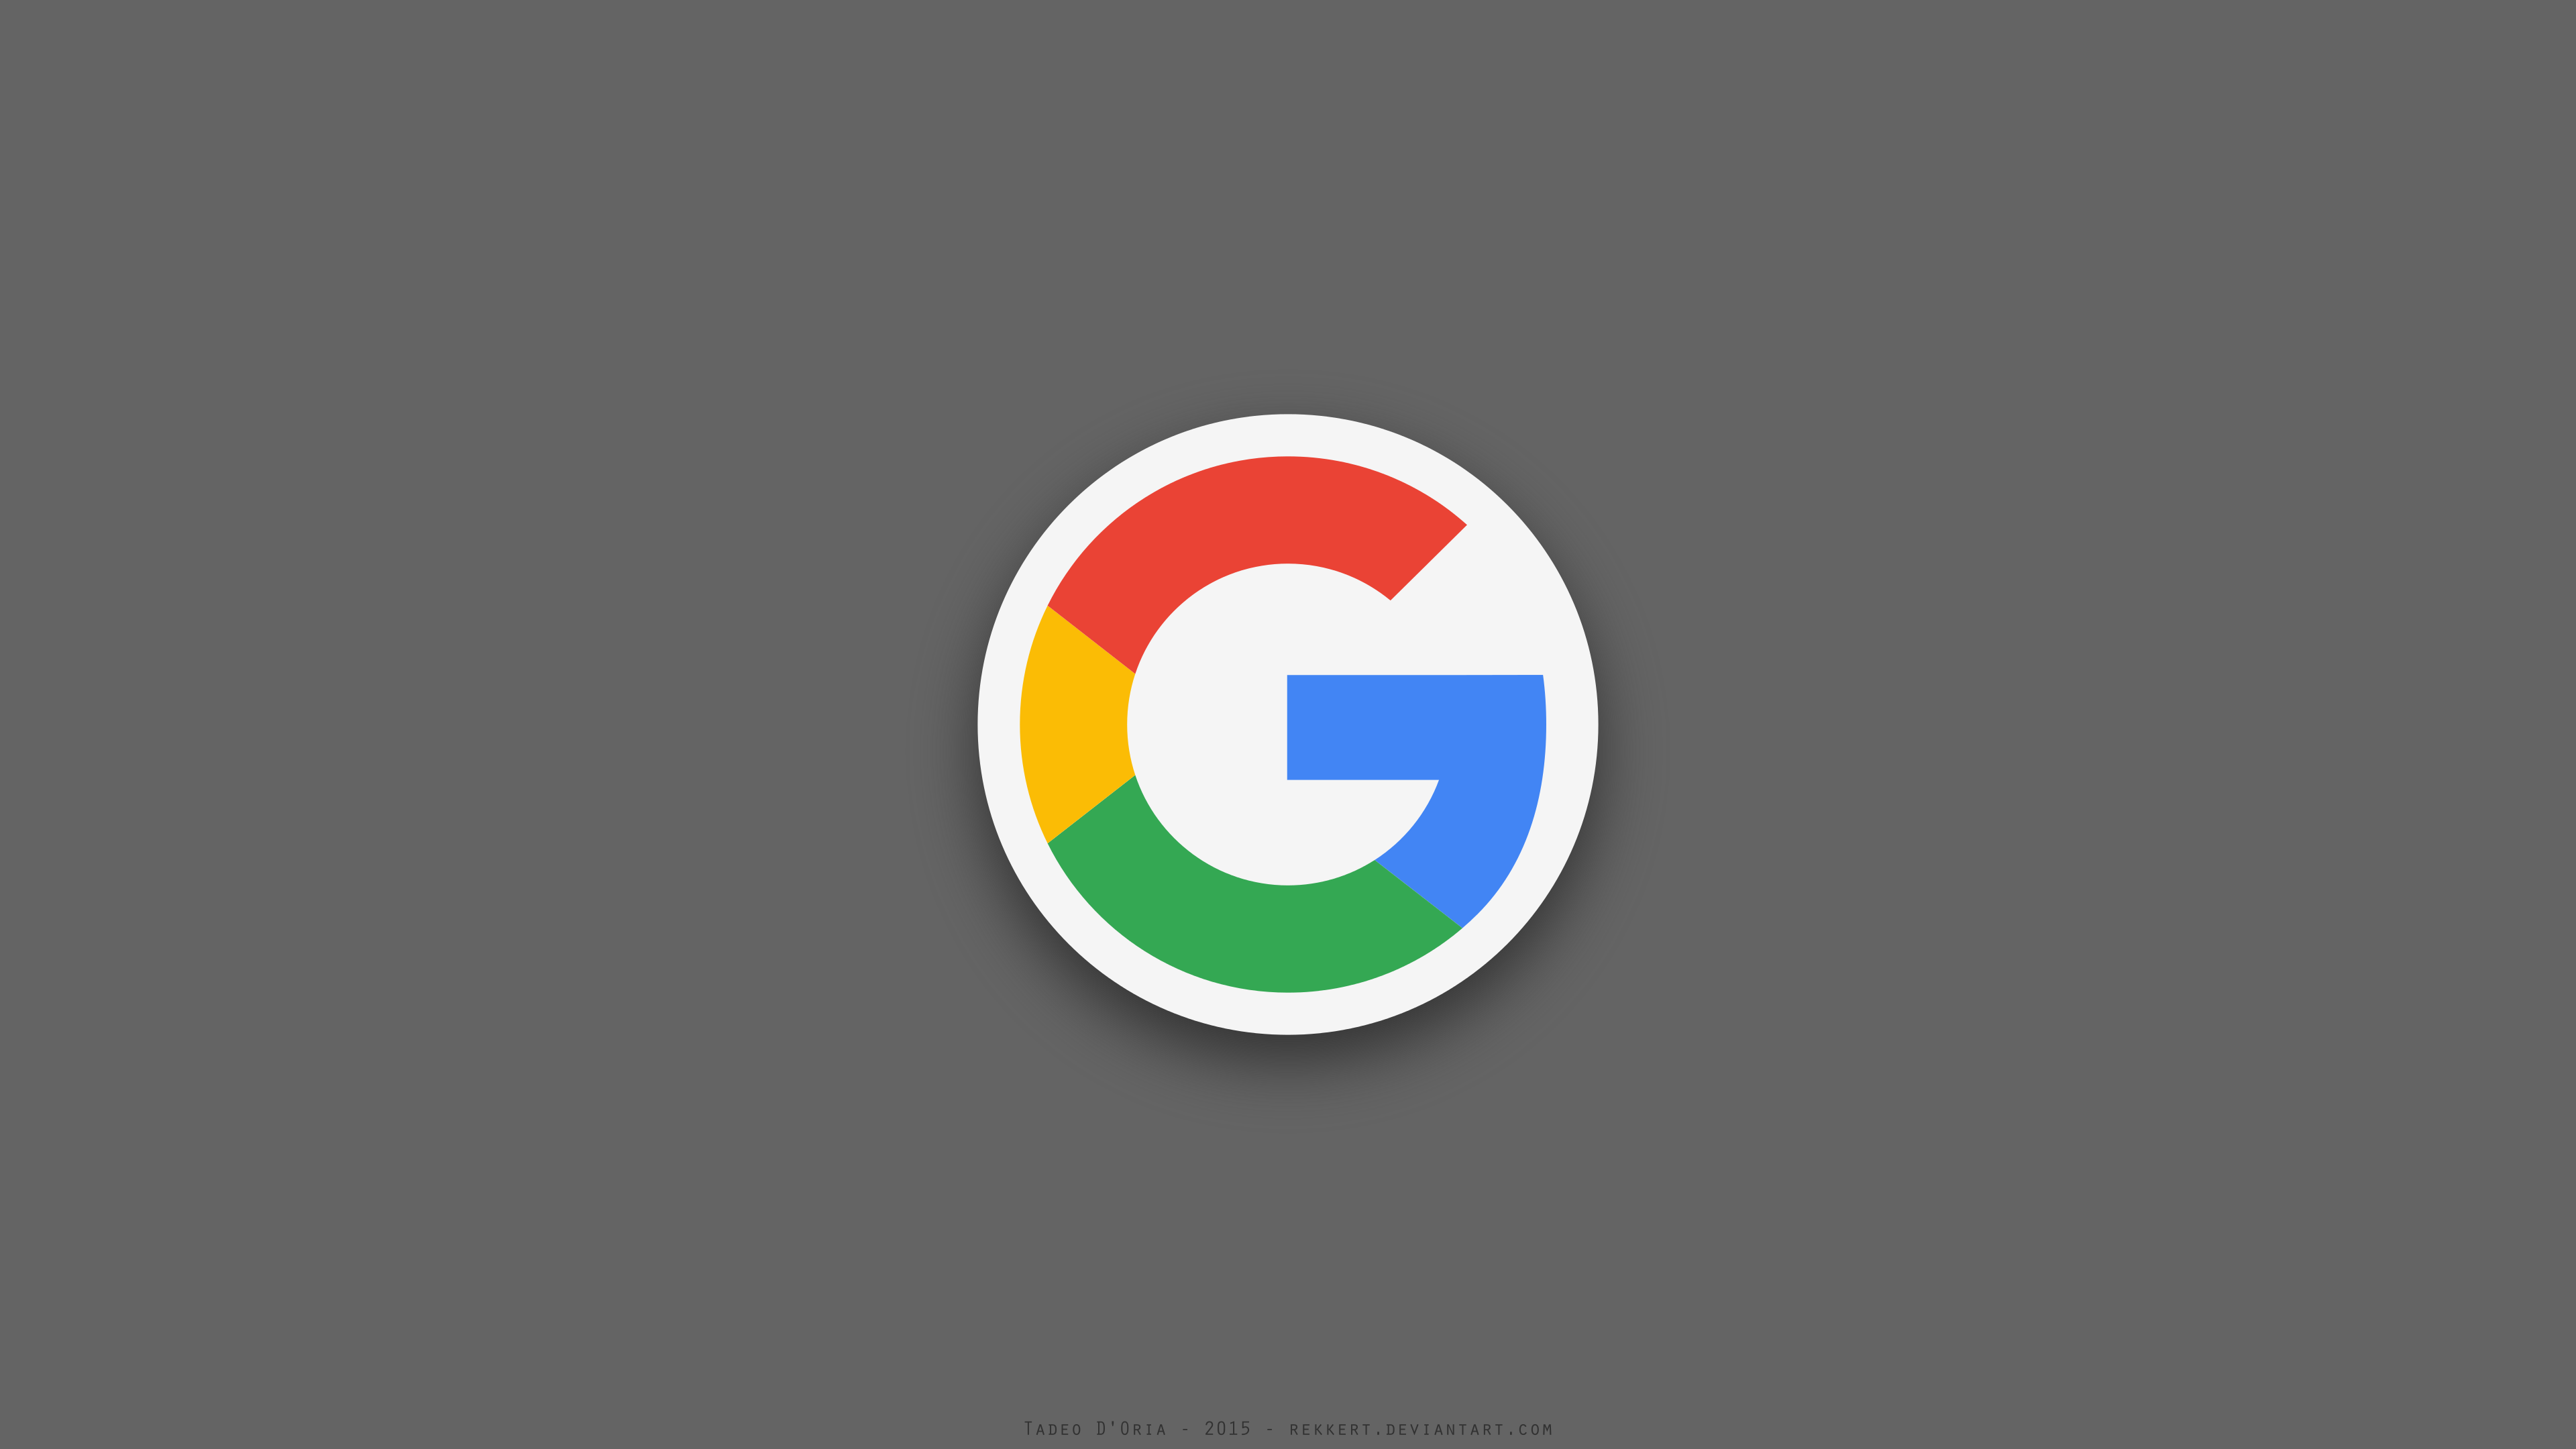 Google PlusPng.com 